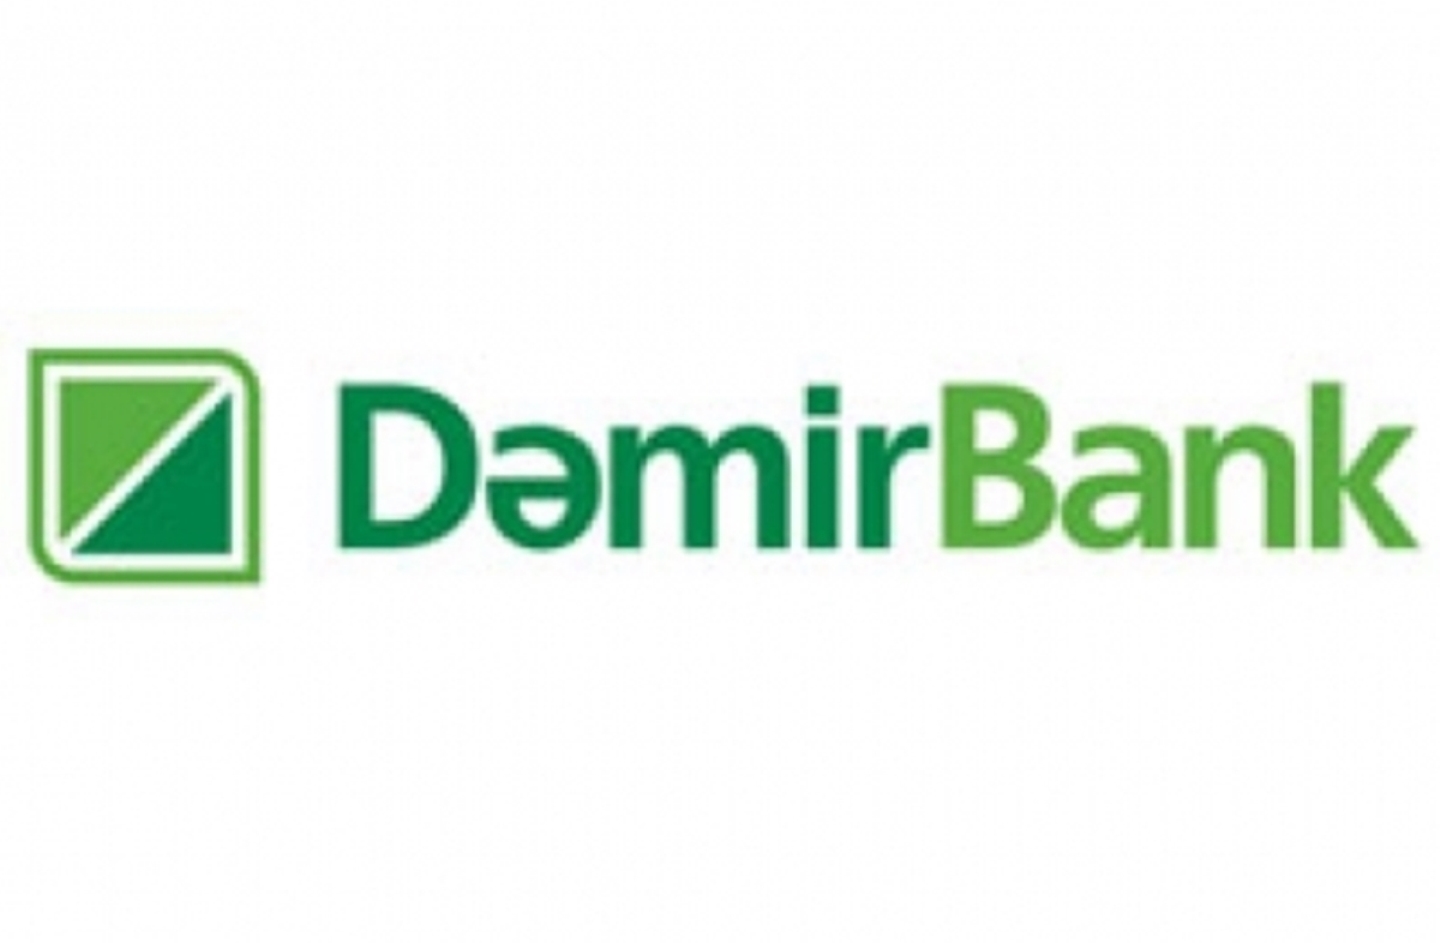 DemirBank начал льготную кредитную акцию «8 необыкновенных дней» 